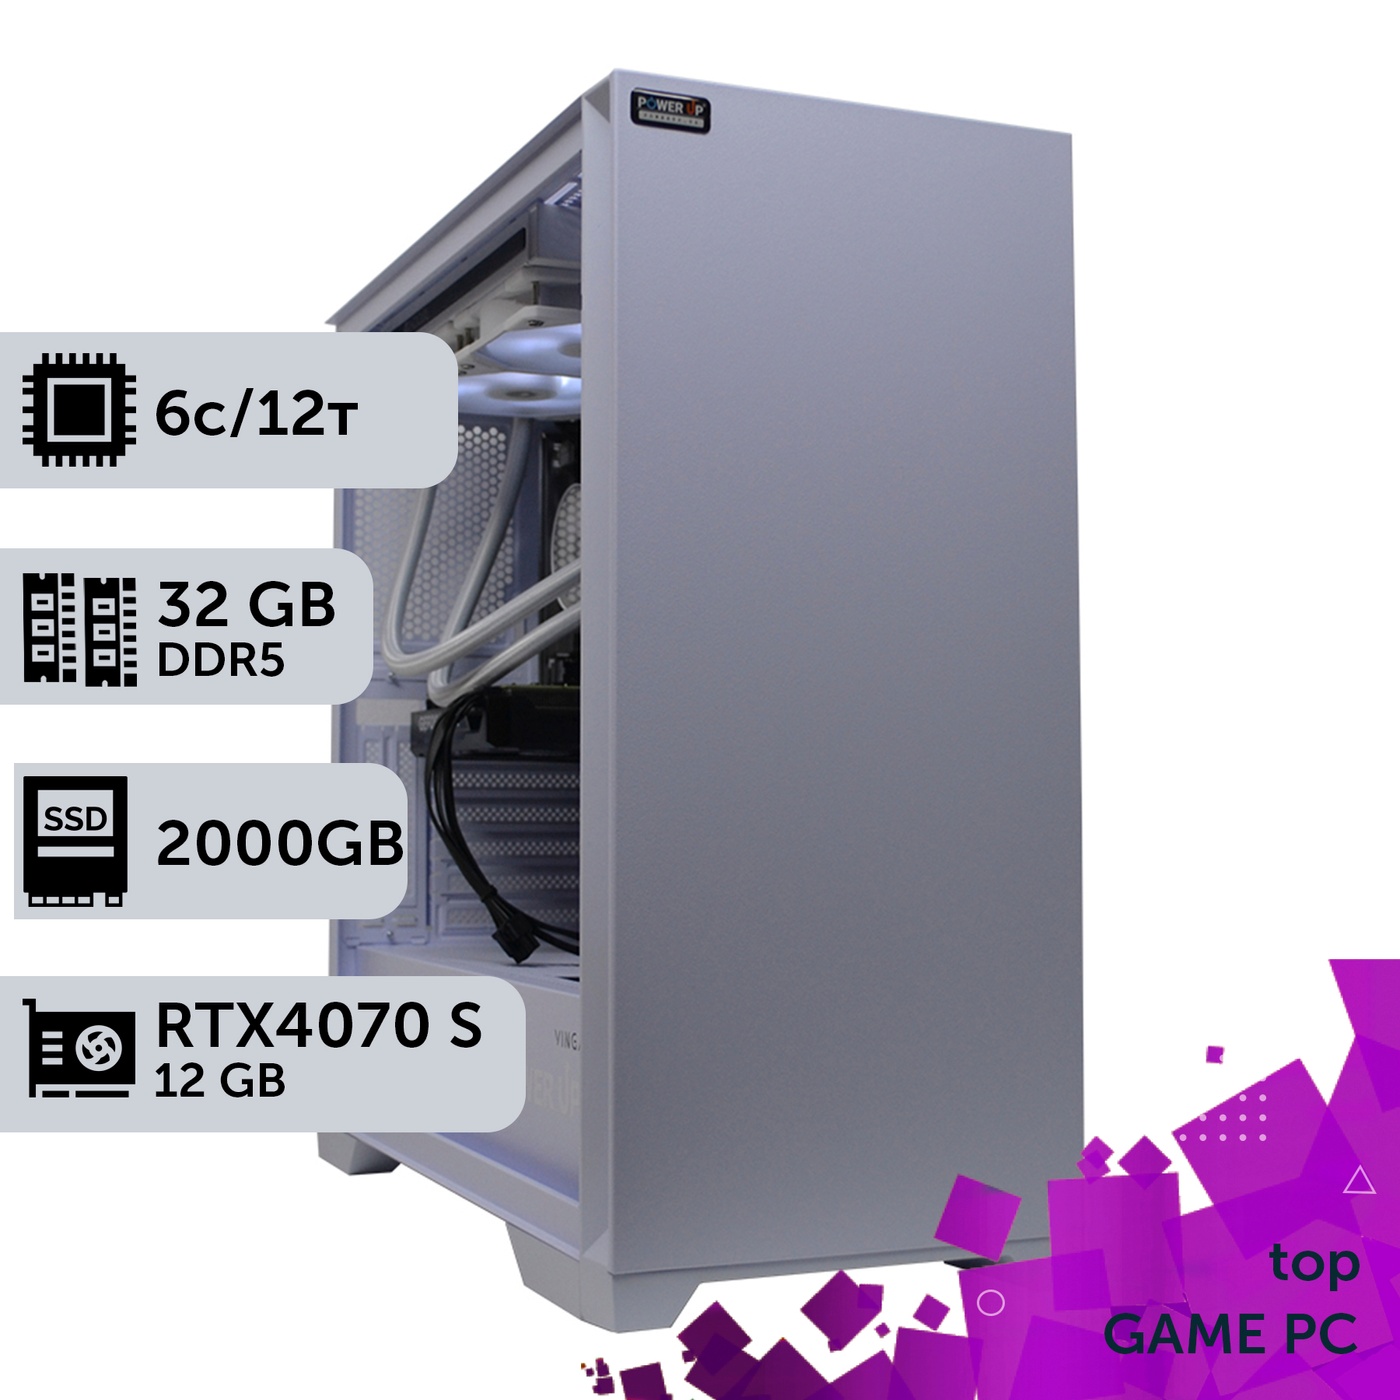 Игровой компьютер GamePC TOP #363 Ryzen 5 7600/32 GB/SSD 2TB/GeForce RTX 4070 Super 12GB